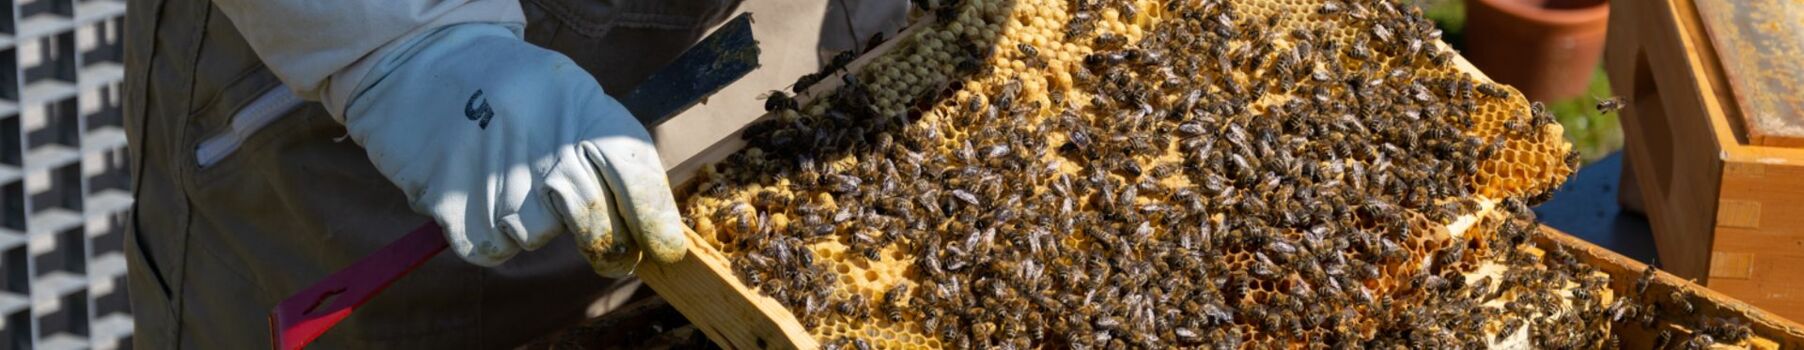 Imker mit Honigbienen auf Wabe